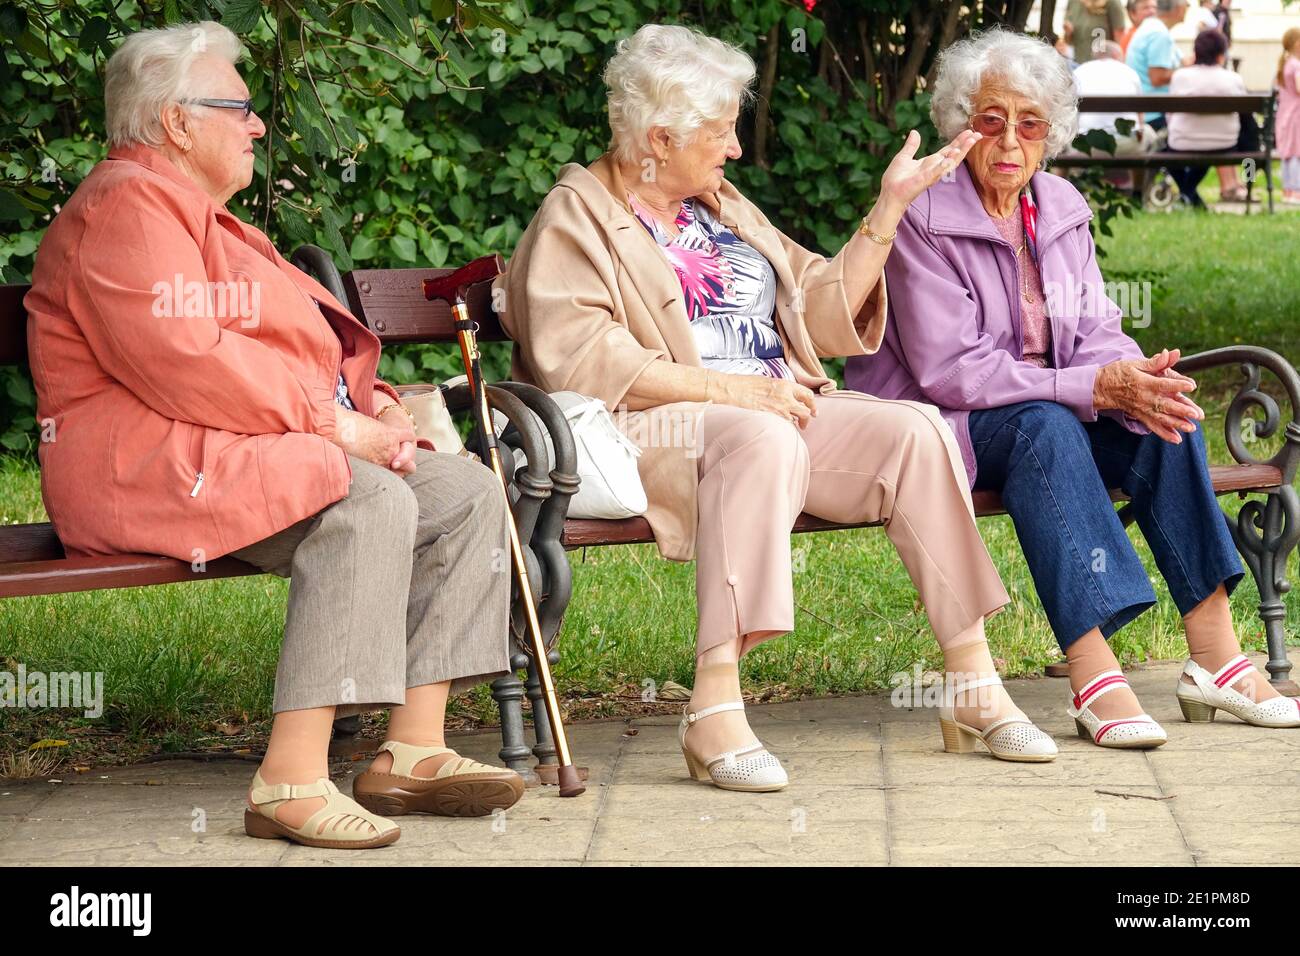 Tres mujeres mayores sentadas en un banco en un parque de la ciudad Ancianos, ancianas, ancianos, ancianos, ancianos, ancianos, ancianos, ancianos, ancianos, ancianos, ancianos, ancianos, ancianos, ancianos, ancianos, ancianos, amigos mayores al aire libre Foto de stock